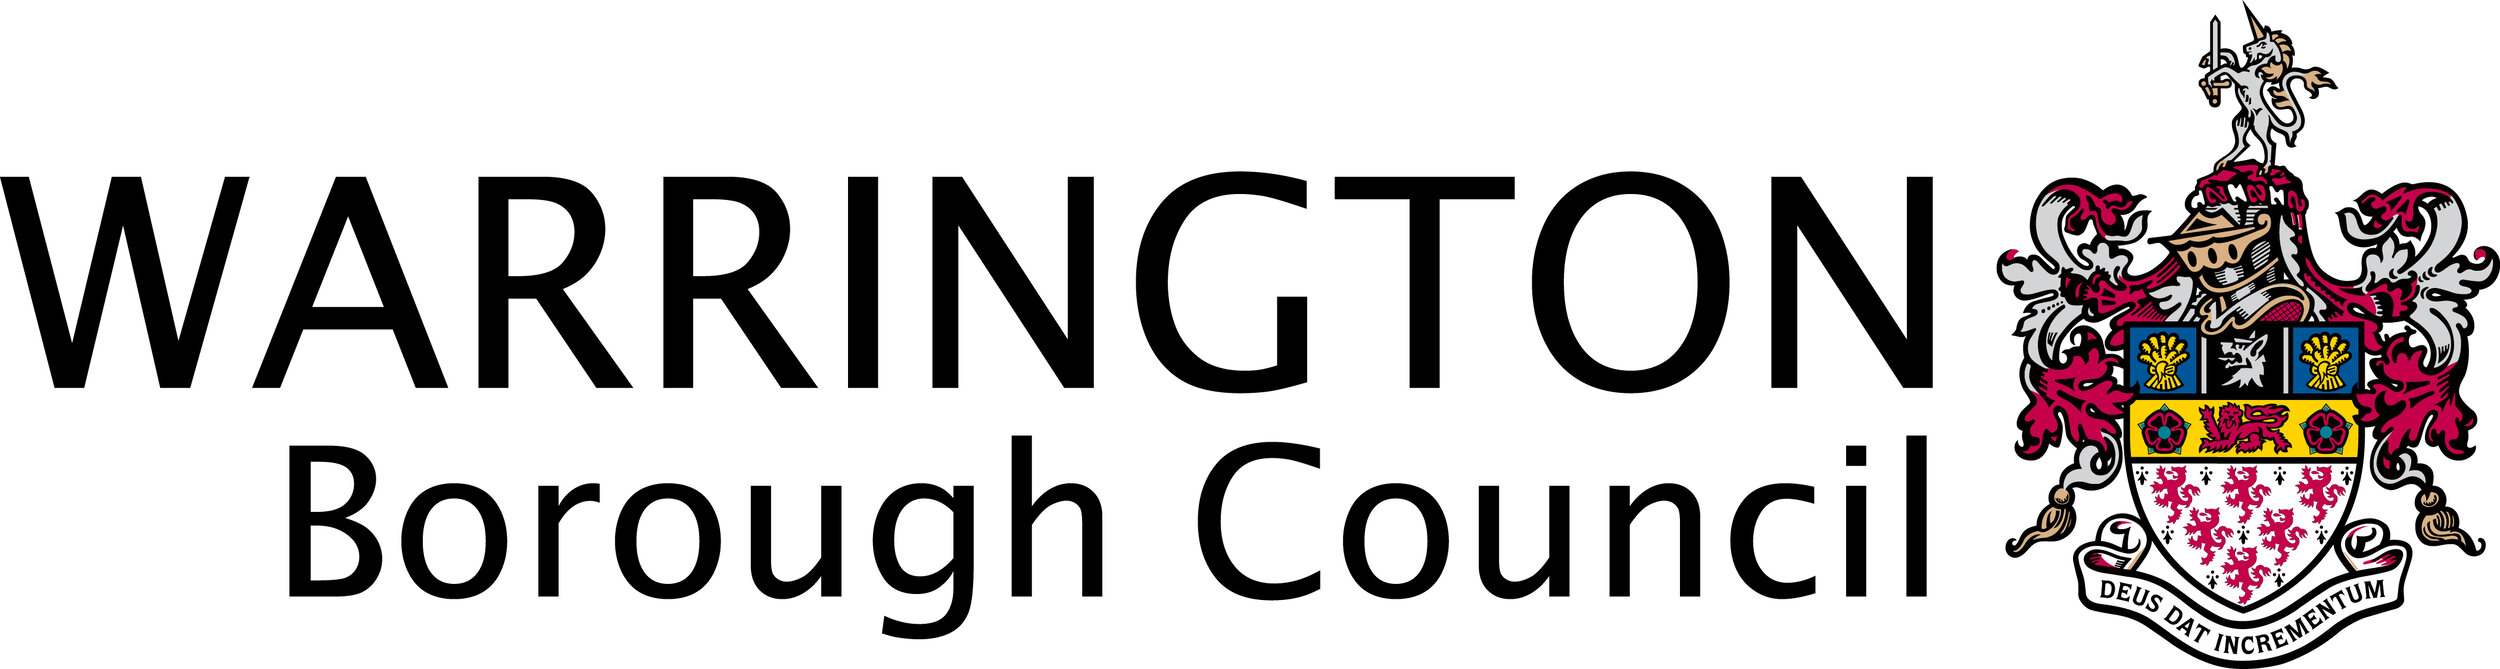 Warrington-borough-council.jpg